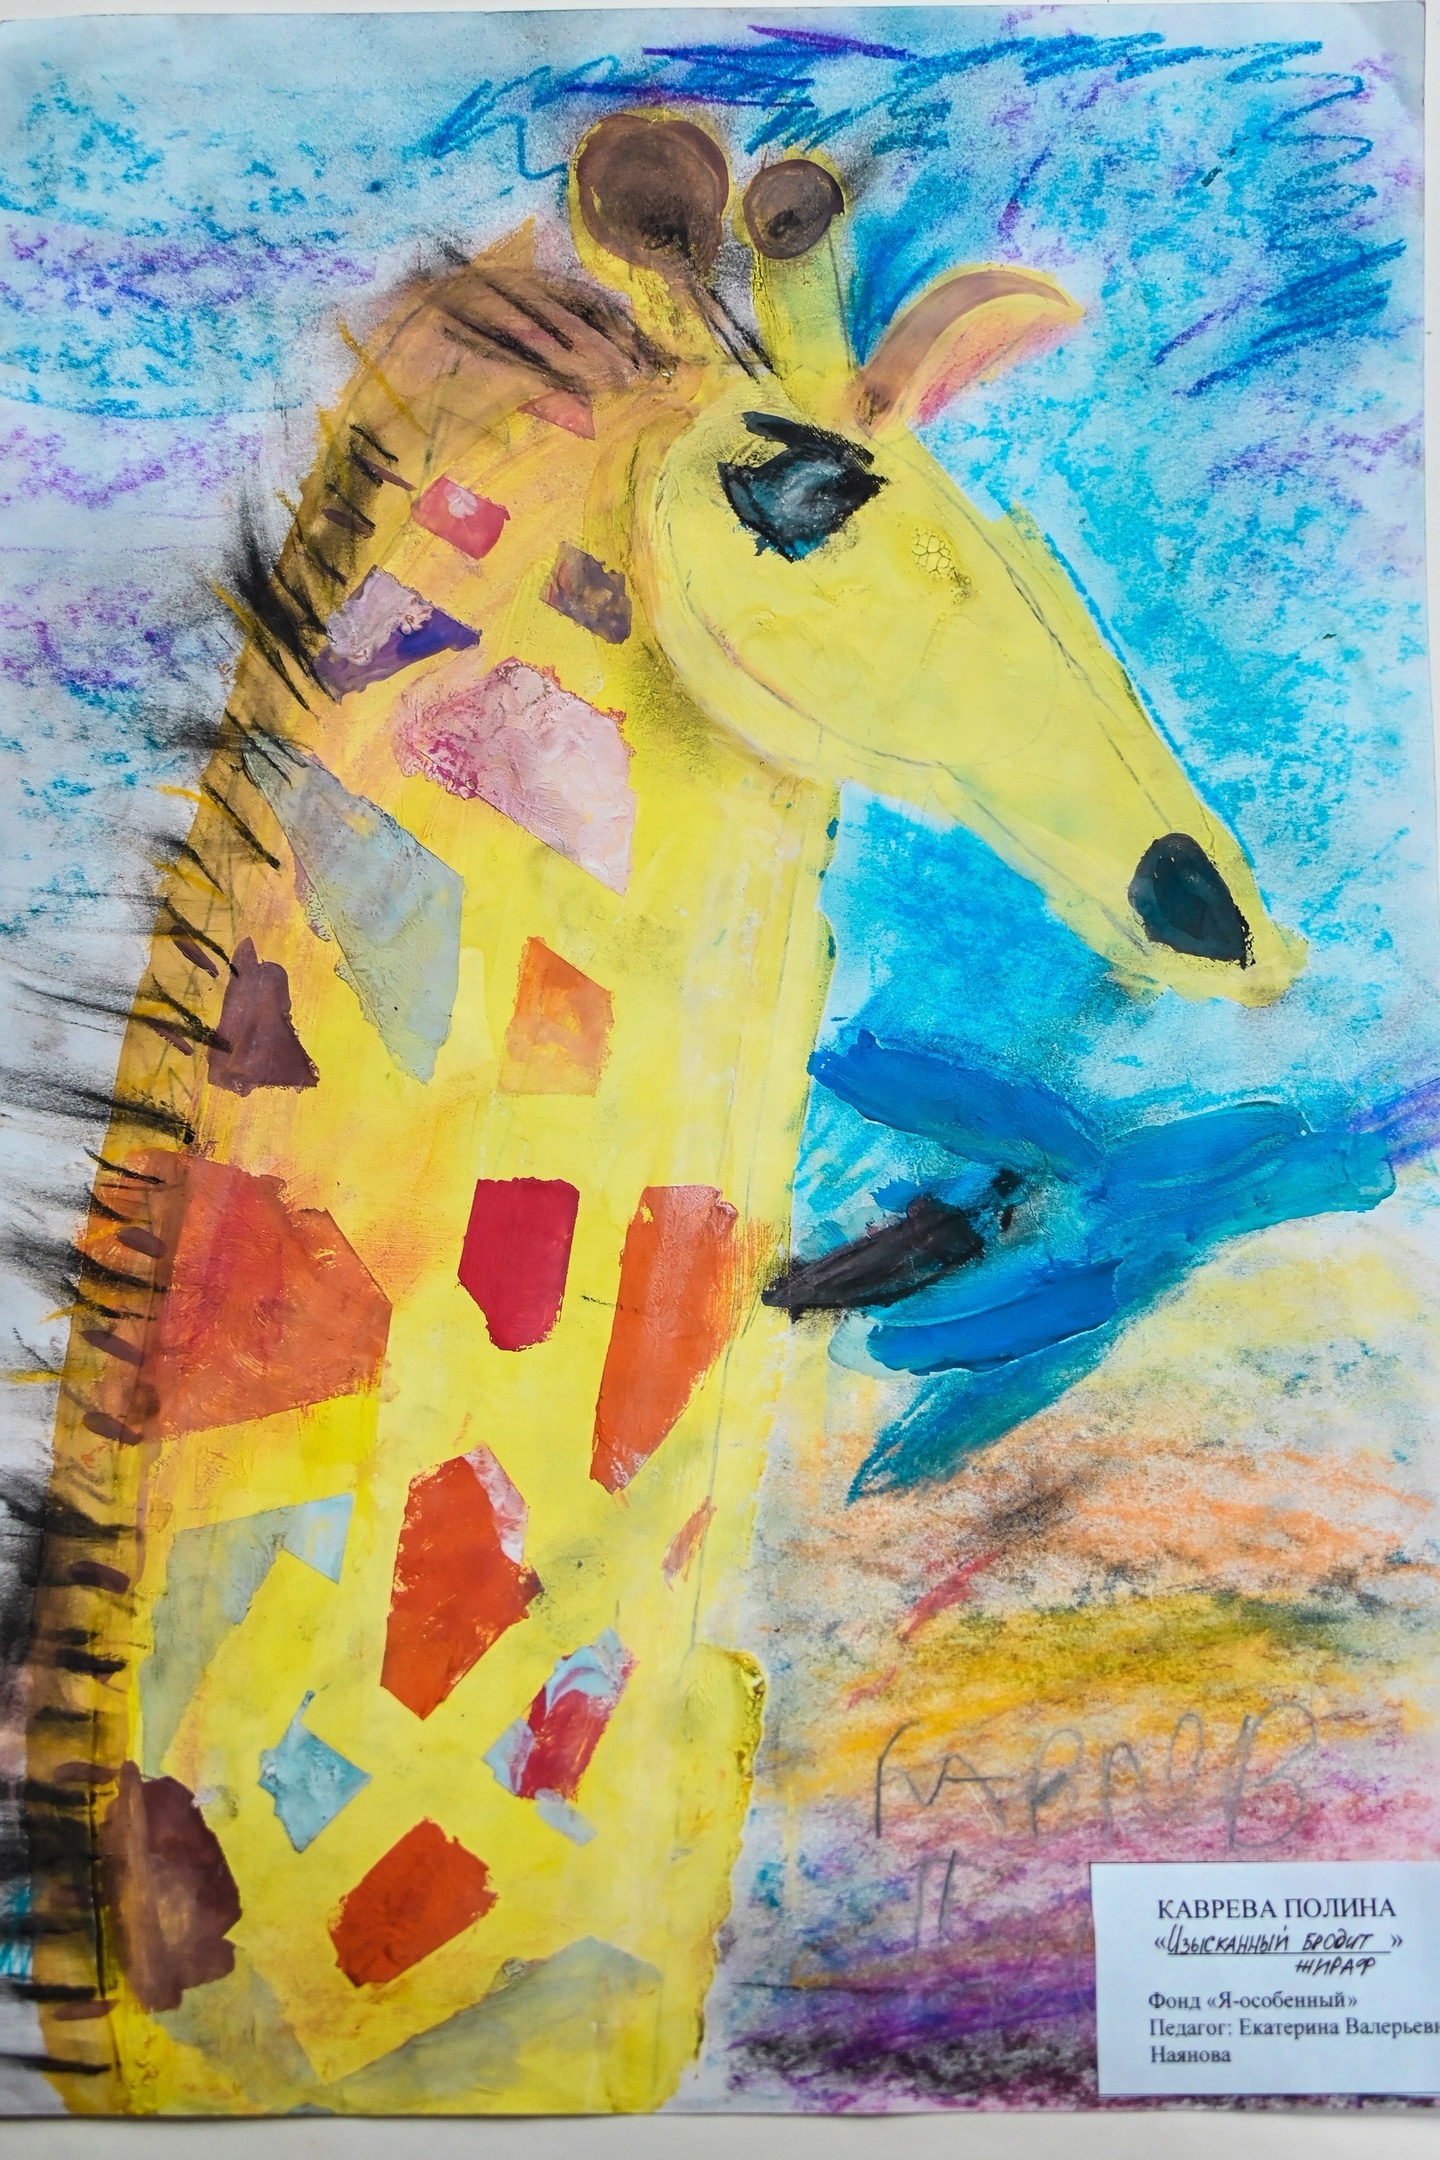 изысканный бродит жираф, Полина Каврева